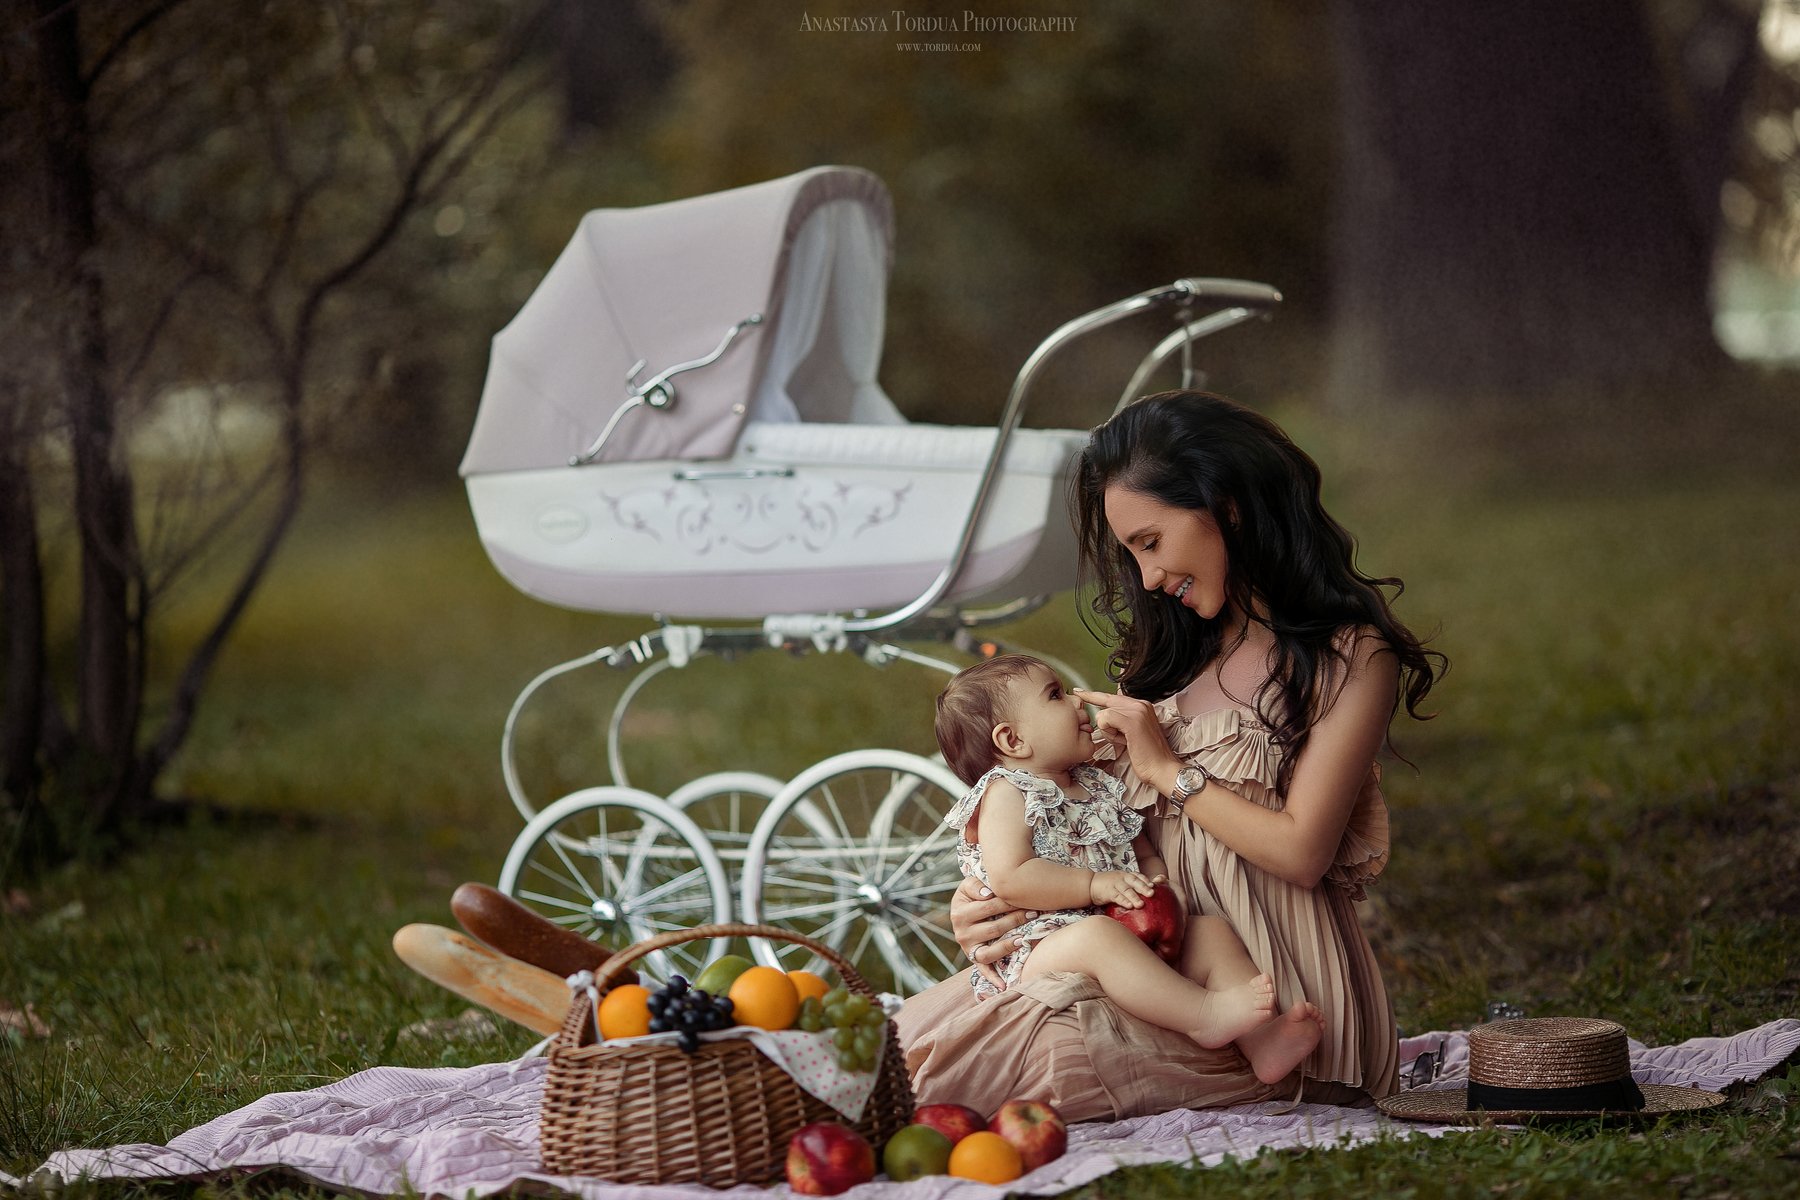 пикник лето коляска ребенок матьидитя детскаясъемка семейнаясъемка тордуа лето фрукты, Анастасия Тордуа